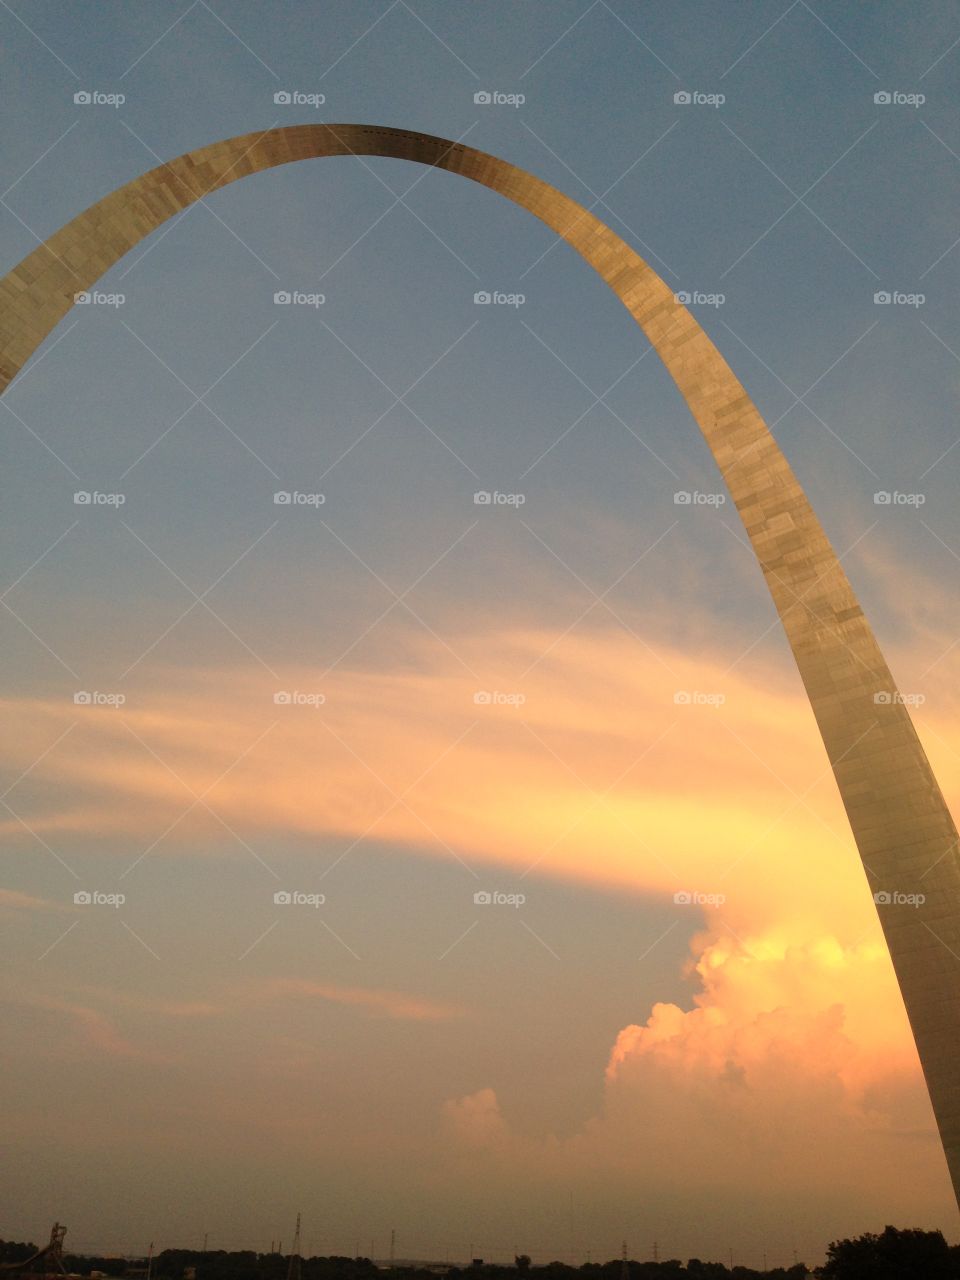 St Louis arch
